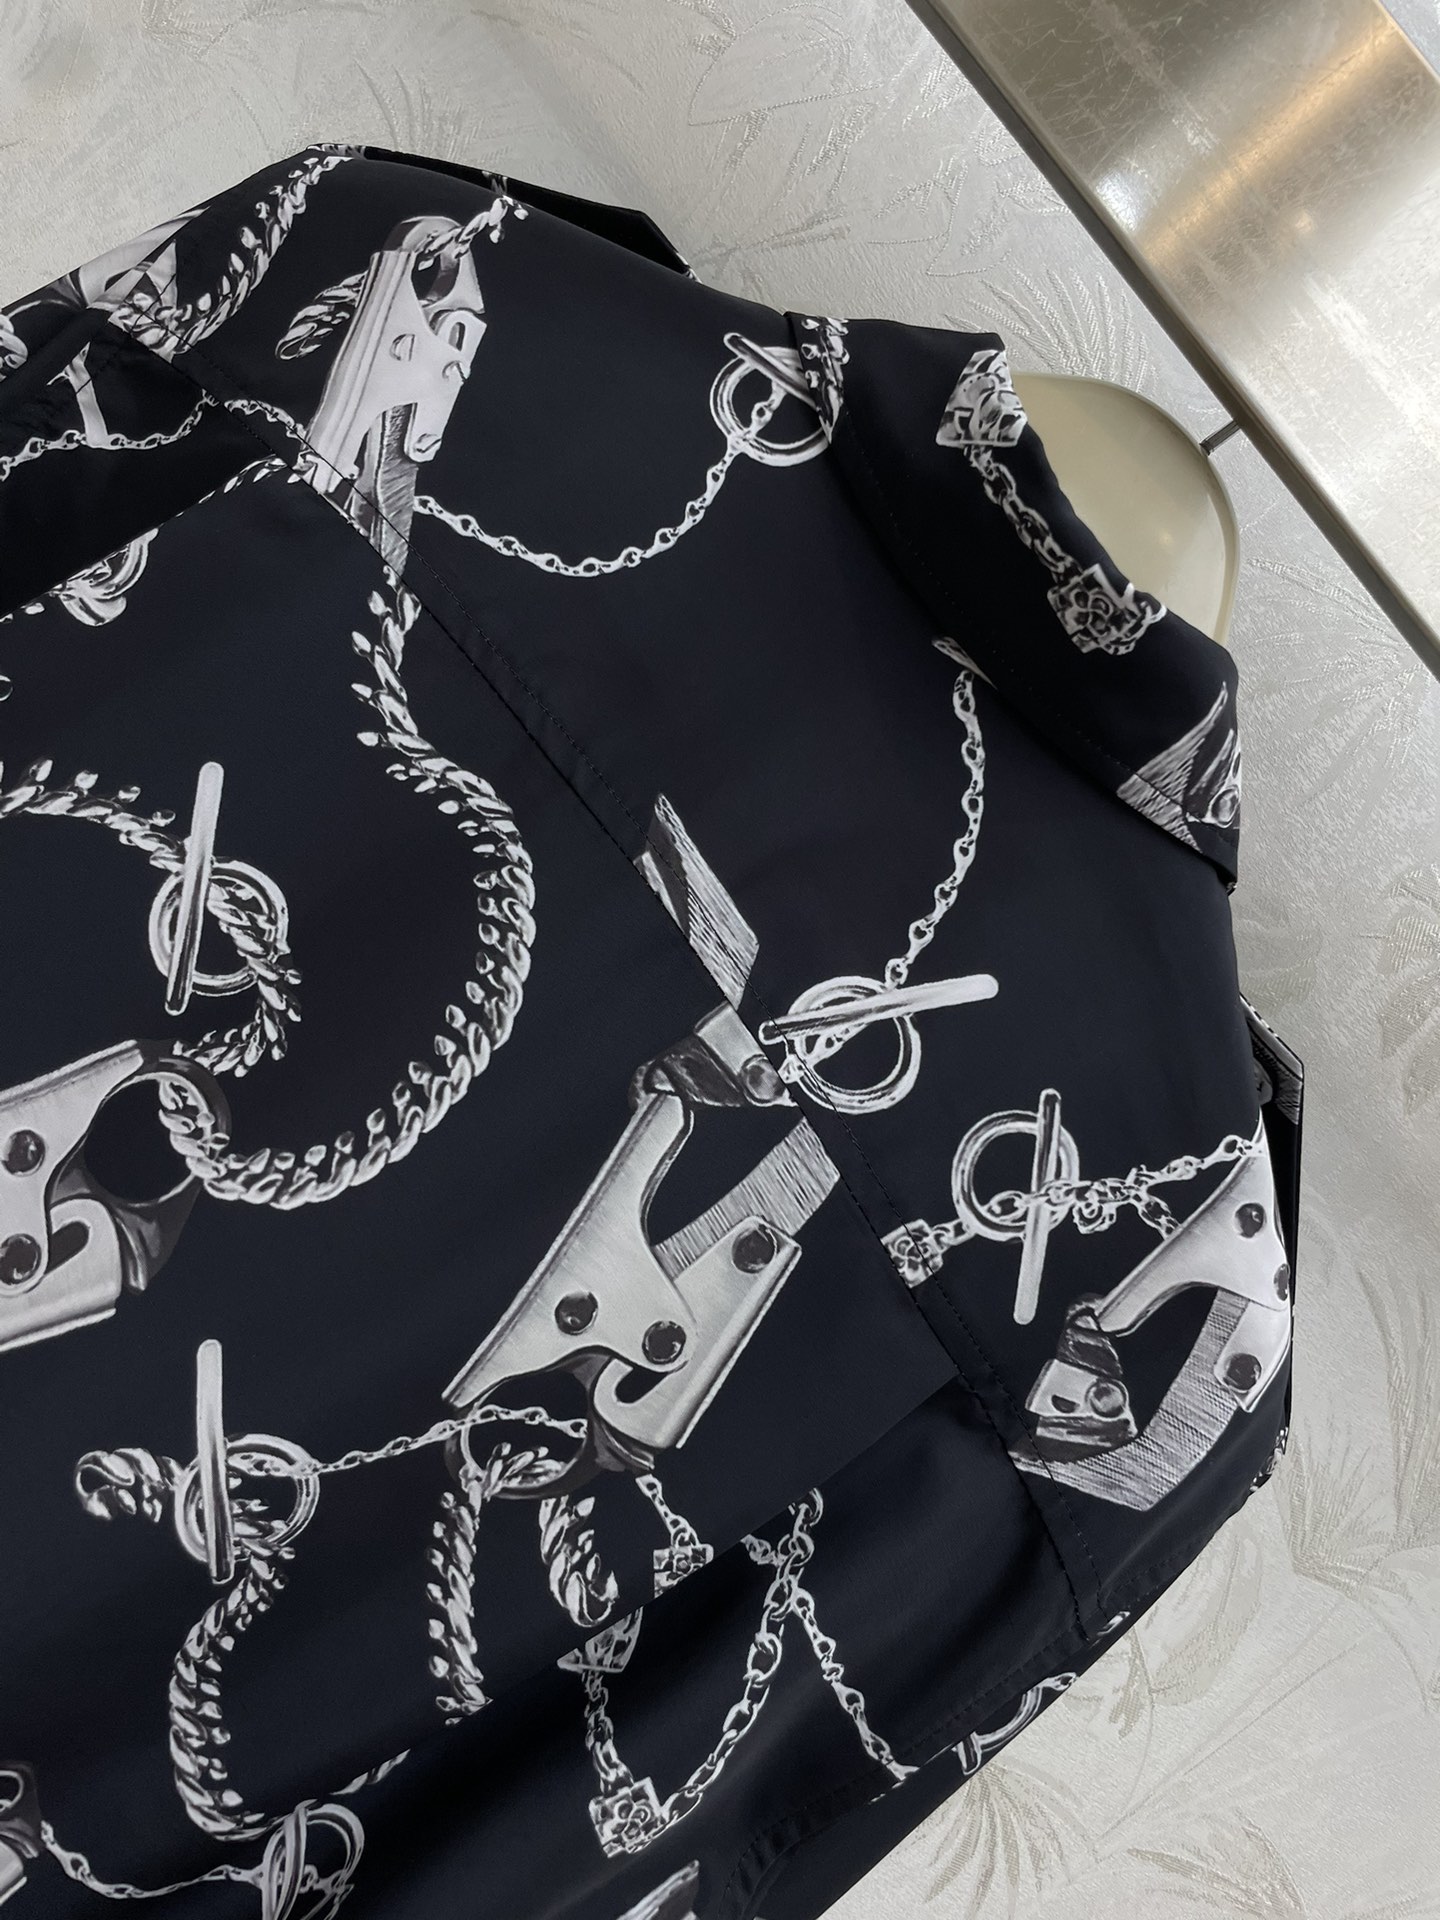 Bur24春夏新款华丽配件图案印花衬衫赋予摩登质感搭肩式设计带一种工装风时髦感阔型剪裁自带慵懒和时髦随意